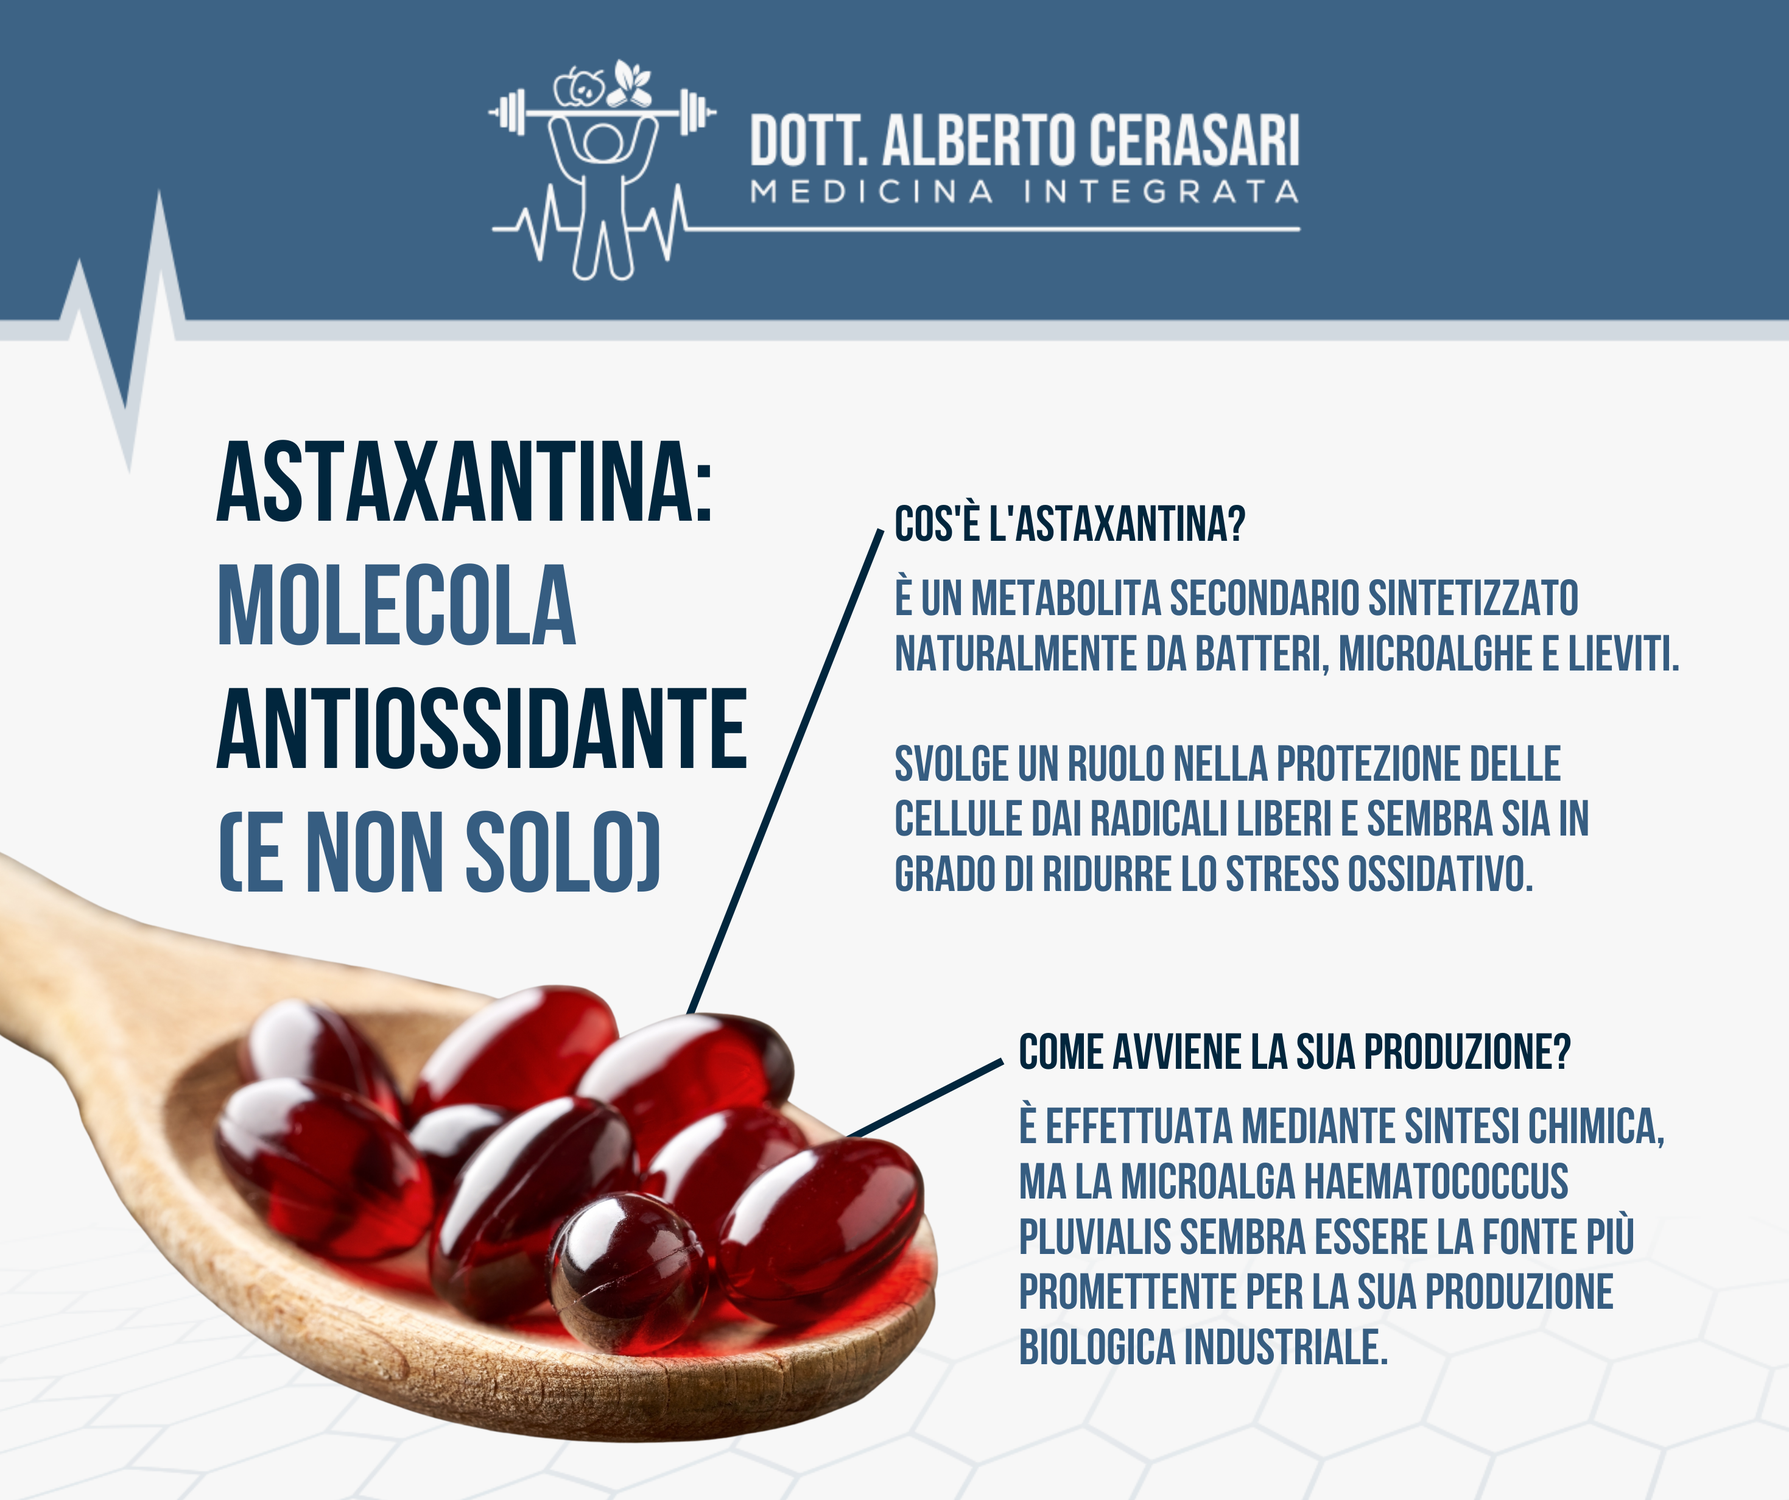 Astaxantina – Una molecola antiossidante e non solo